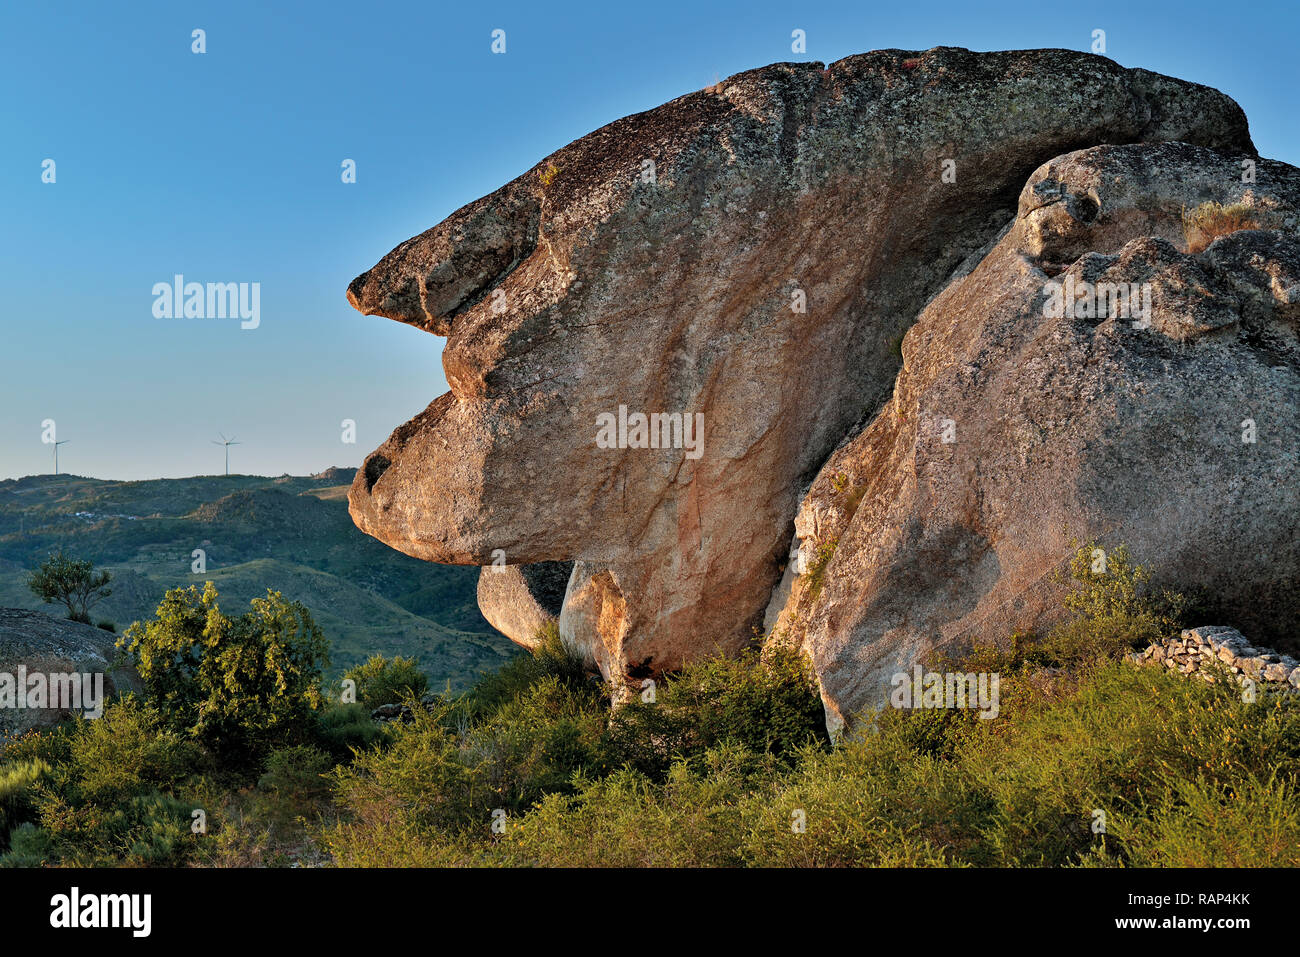 Une énorme roche de granit sculpté de la nature montrant la silhouette d'une vieille femme Banque D'Images